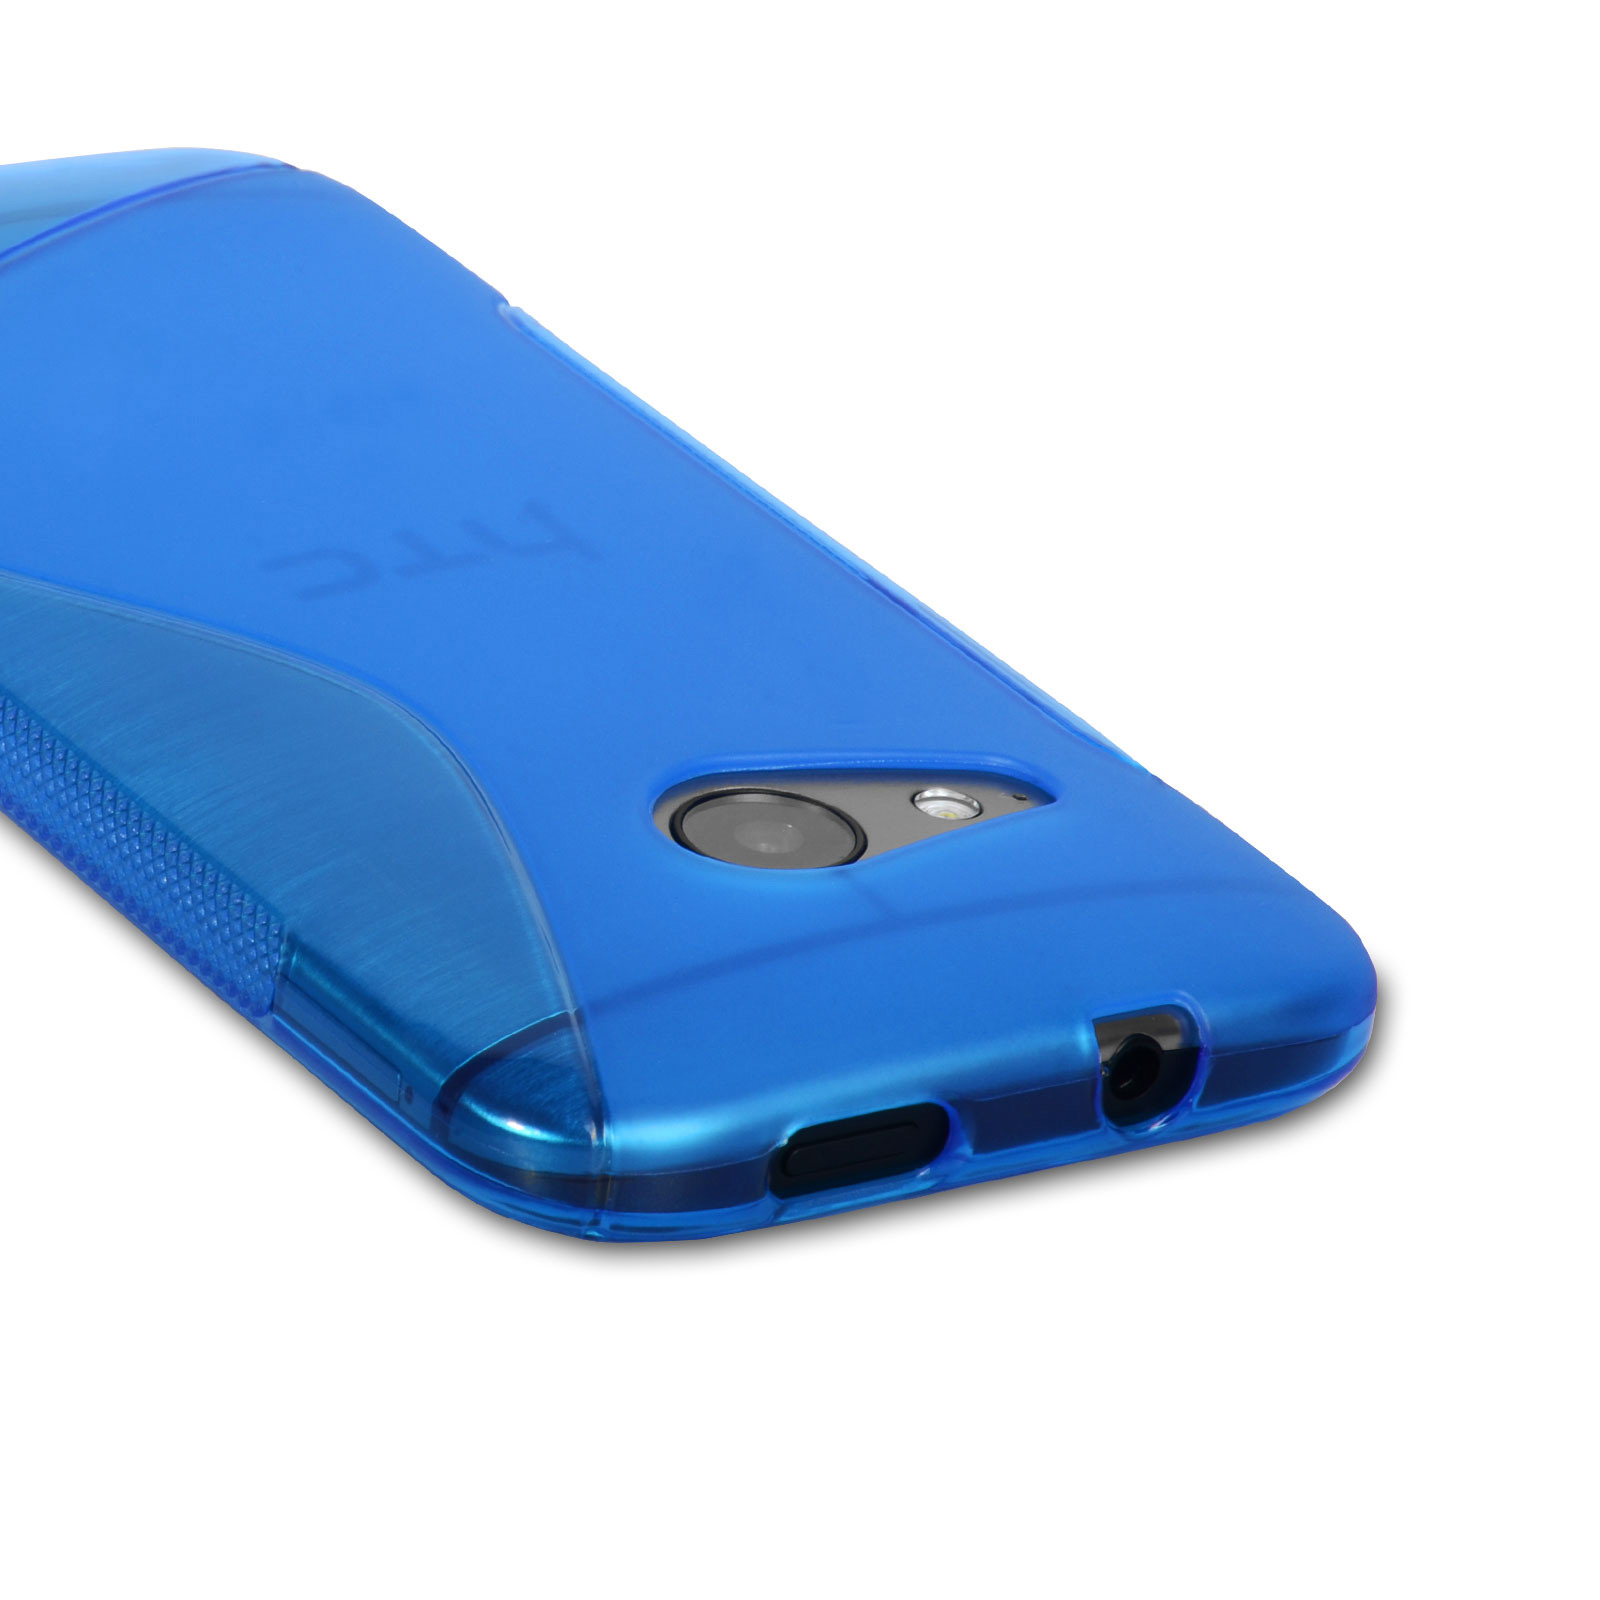 Caseflex HTC One Mini 2 Silicone Gel S-Line Case - Blue